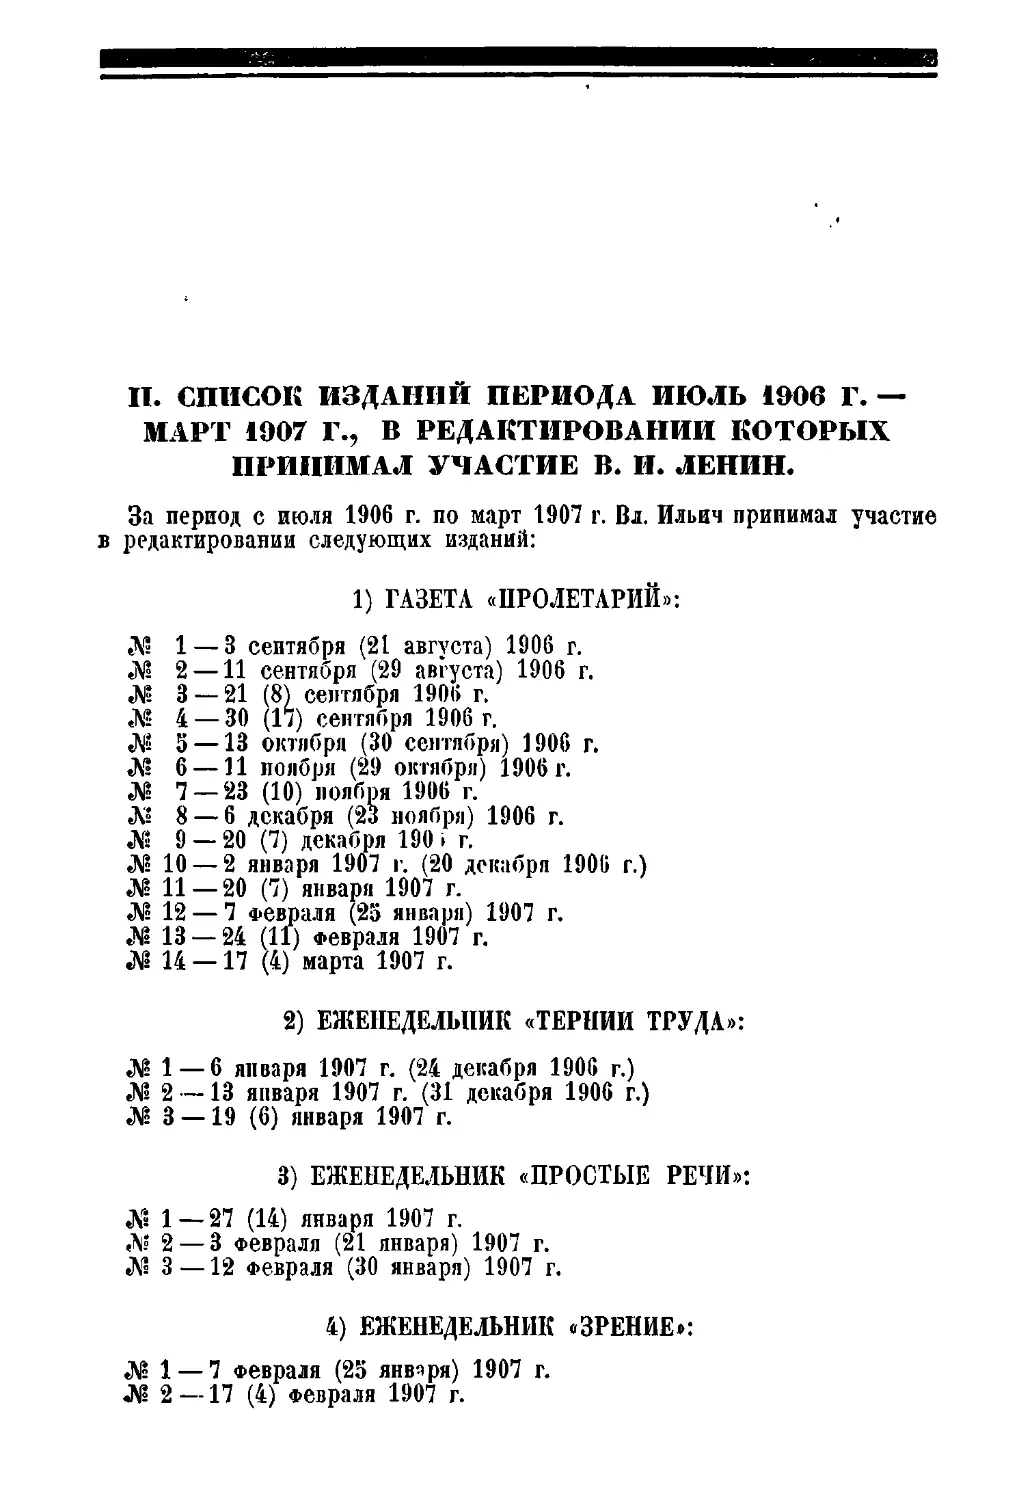 II. Список изданий периода: июль 1906 г, — март 1907 г., в редактировании которых принимал участие В. И. Ленин